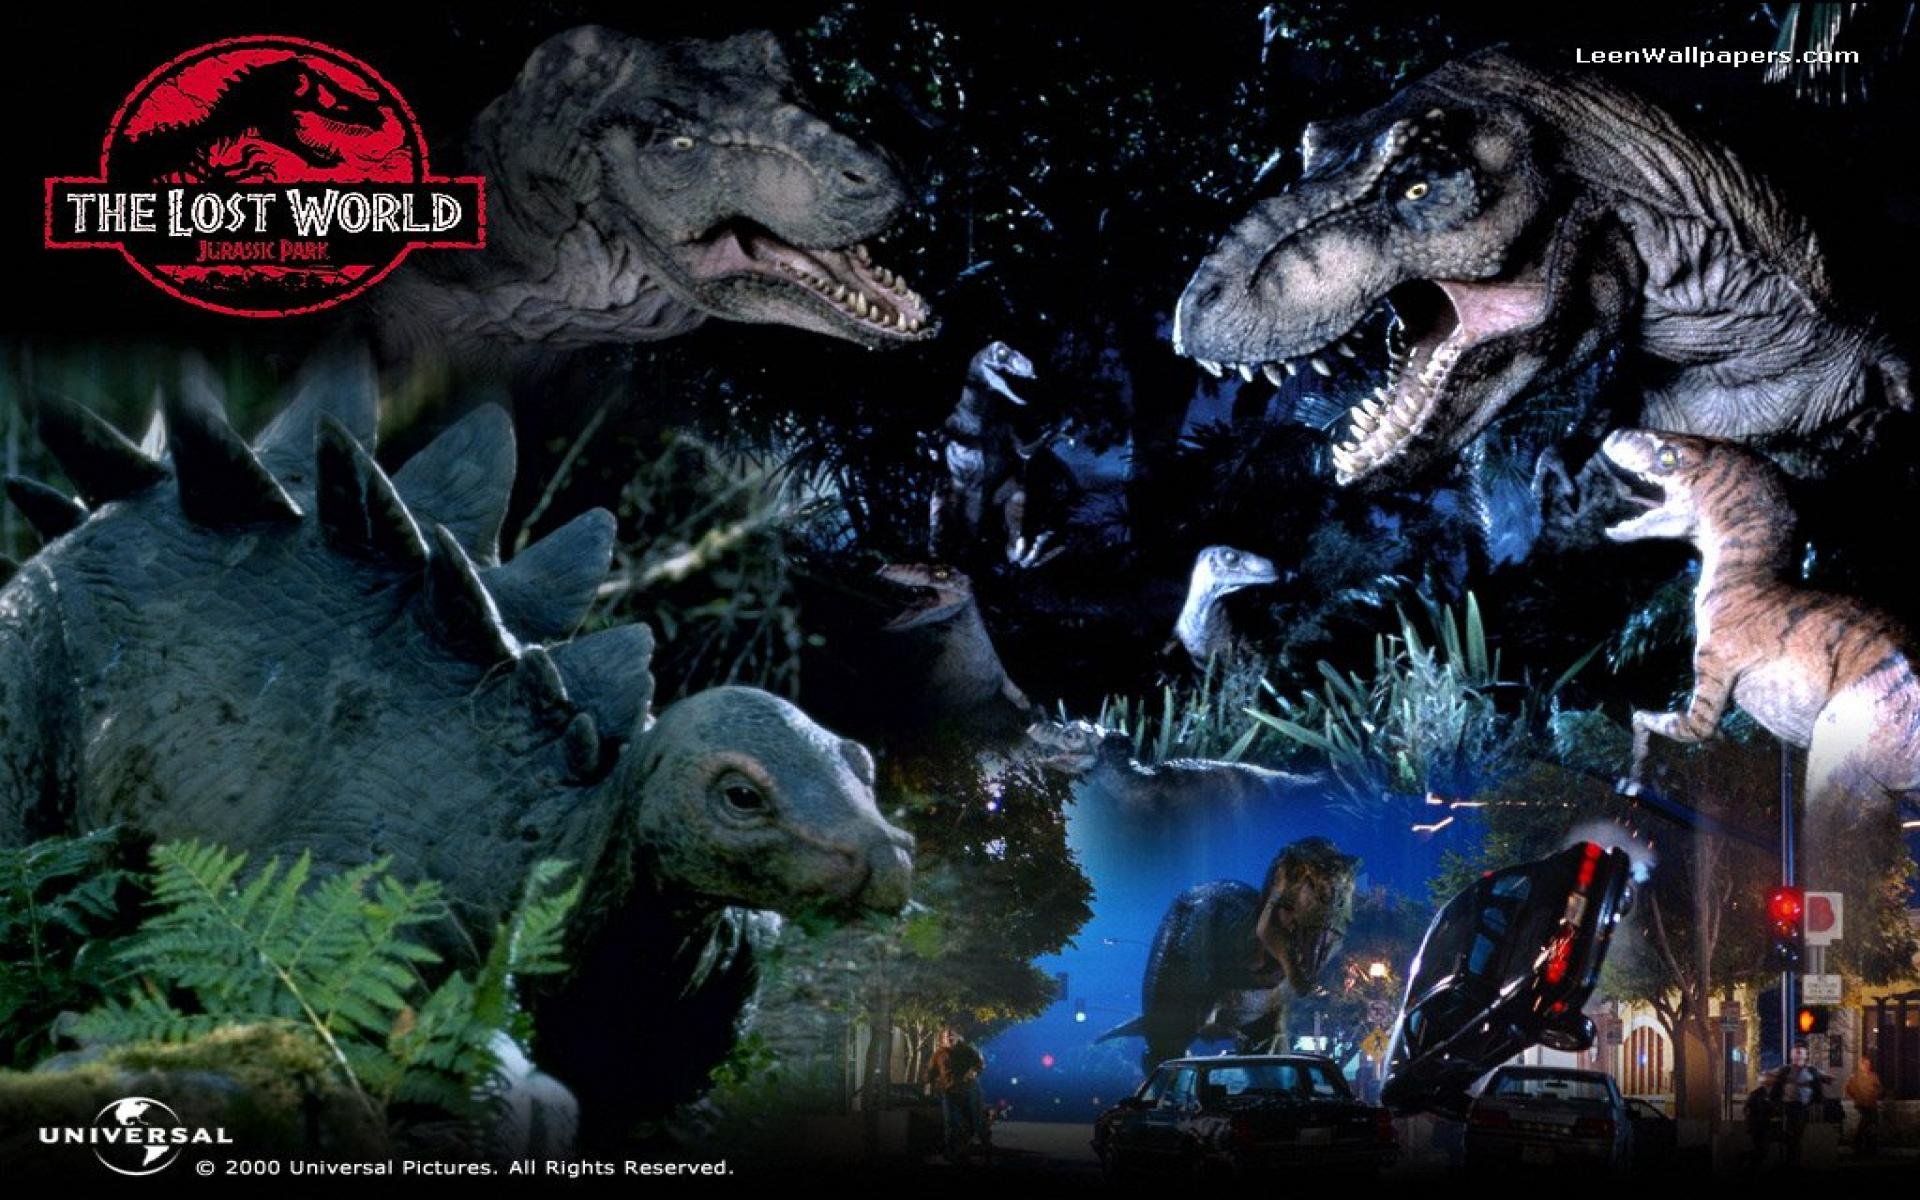 jurassic, Park, Adventure, Sci fi, Fantasy, Dinosaur, Movie, Film, Poster Wallpaper